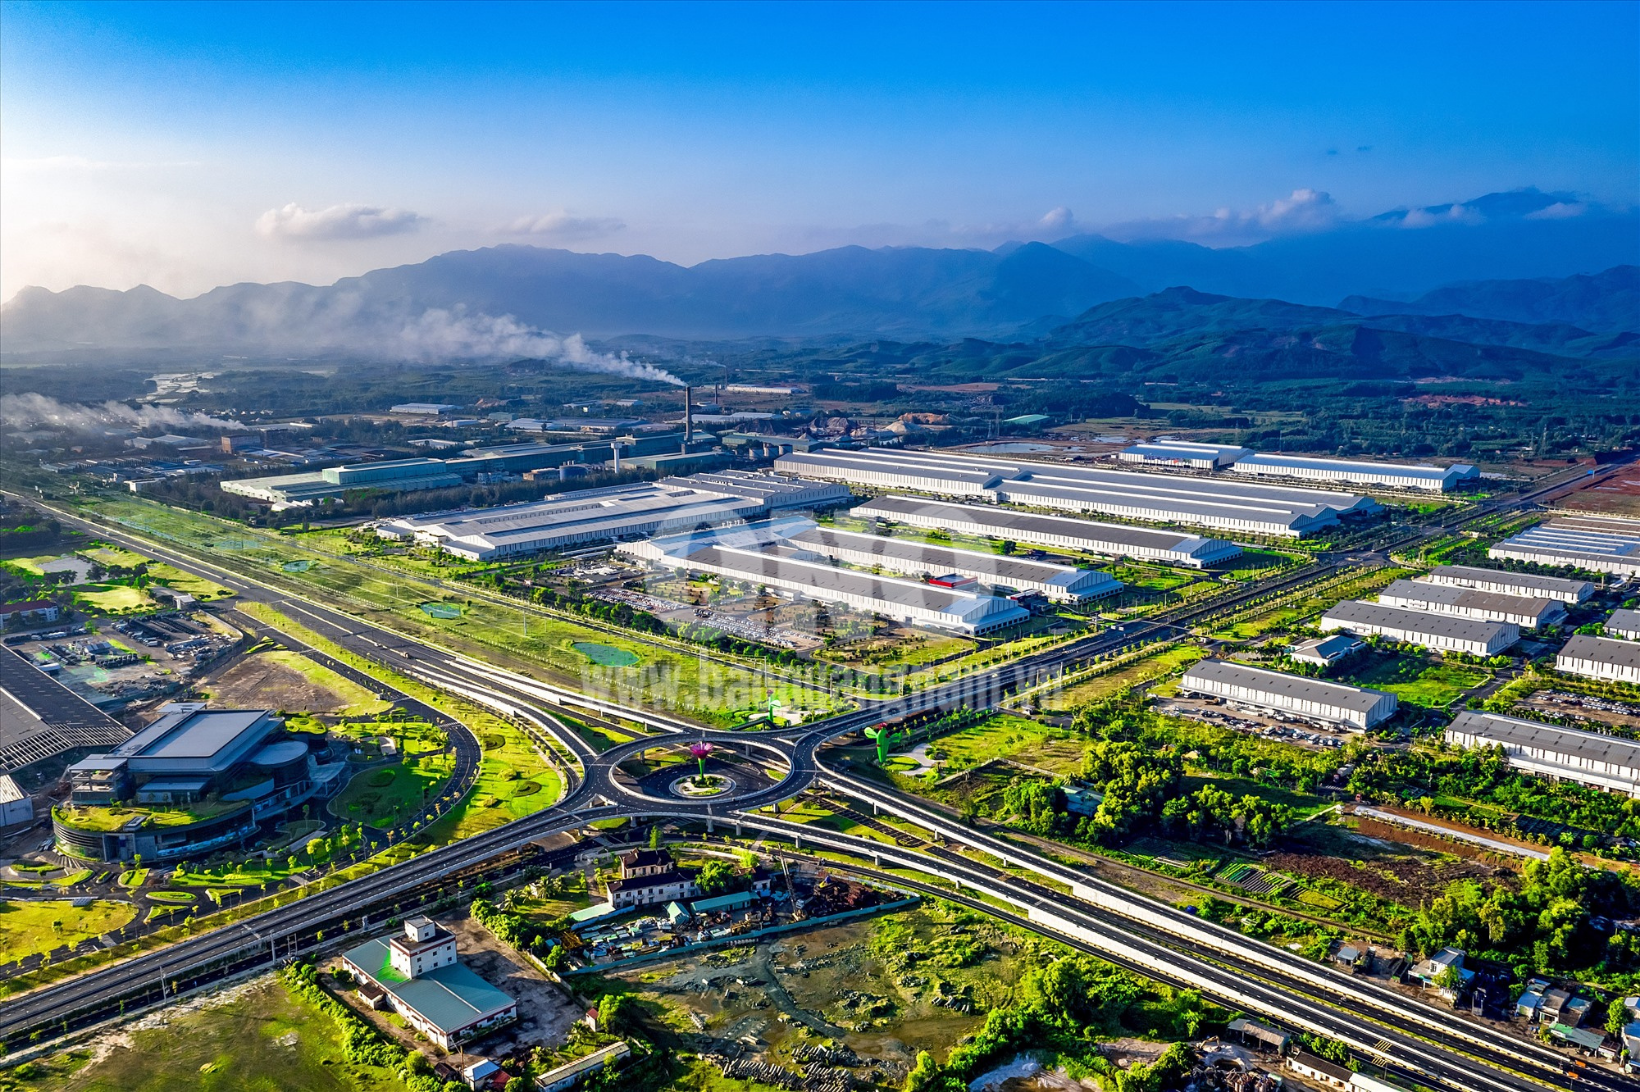 Công nghiệp là đầu tàu kinh kế của địa phương này và của Quảng Nam với Khu kinh tế mở Chu Lai, Khu Công nghiệp Bắc Chu Lai... thu hút hàng trăm nhà đầu tư, doanh nghiệp lớn. Ảnh: UBND huyện Núi Thành.